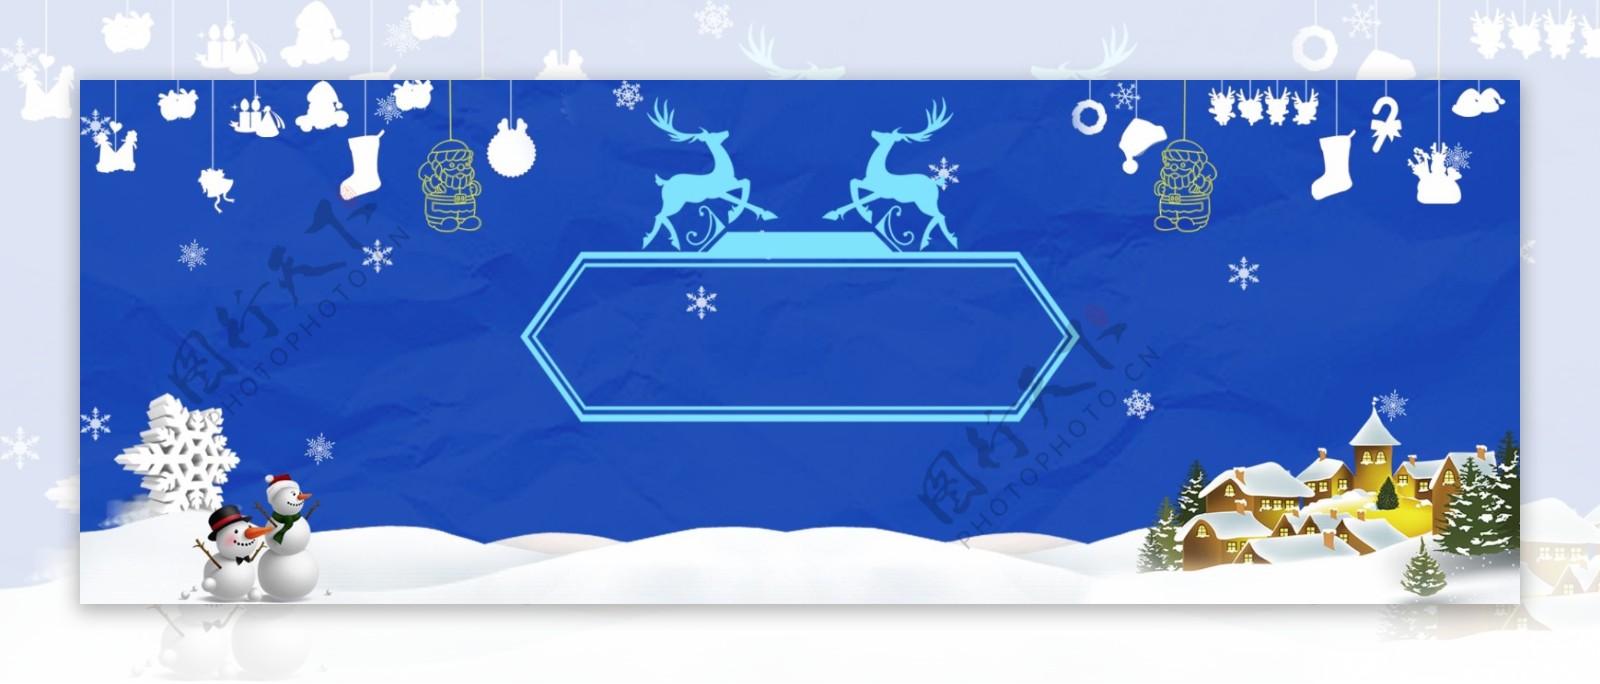 圣诞节蓝色雪景电商海报背景